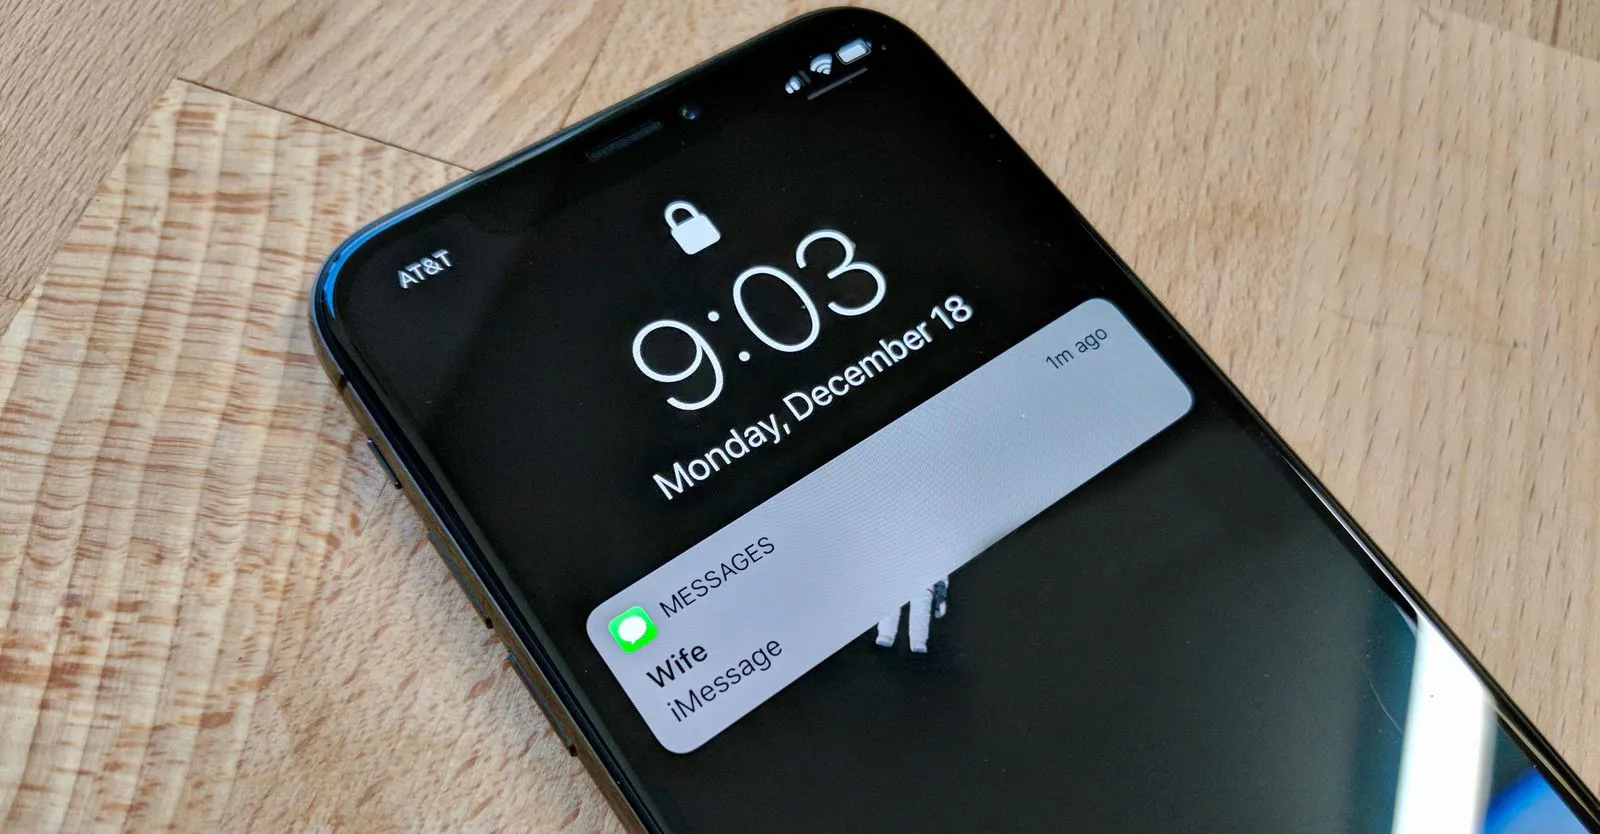 Come silenziare notifiche iPhone automaticamente